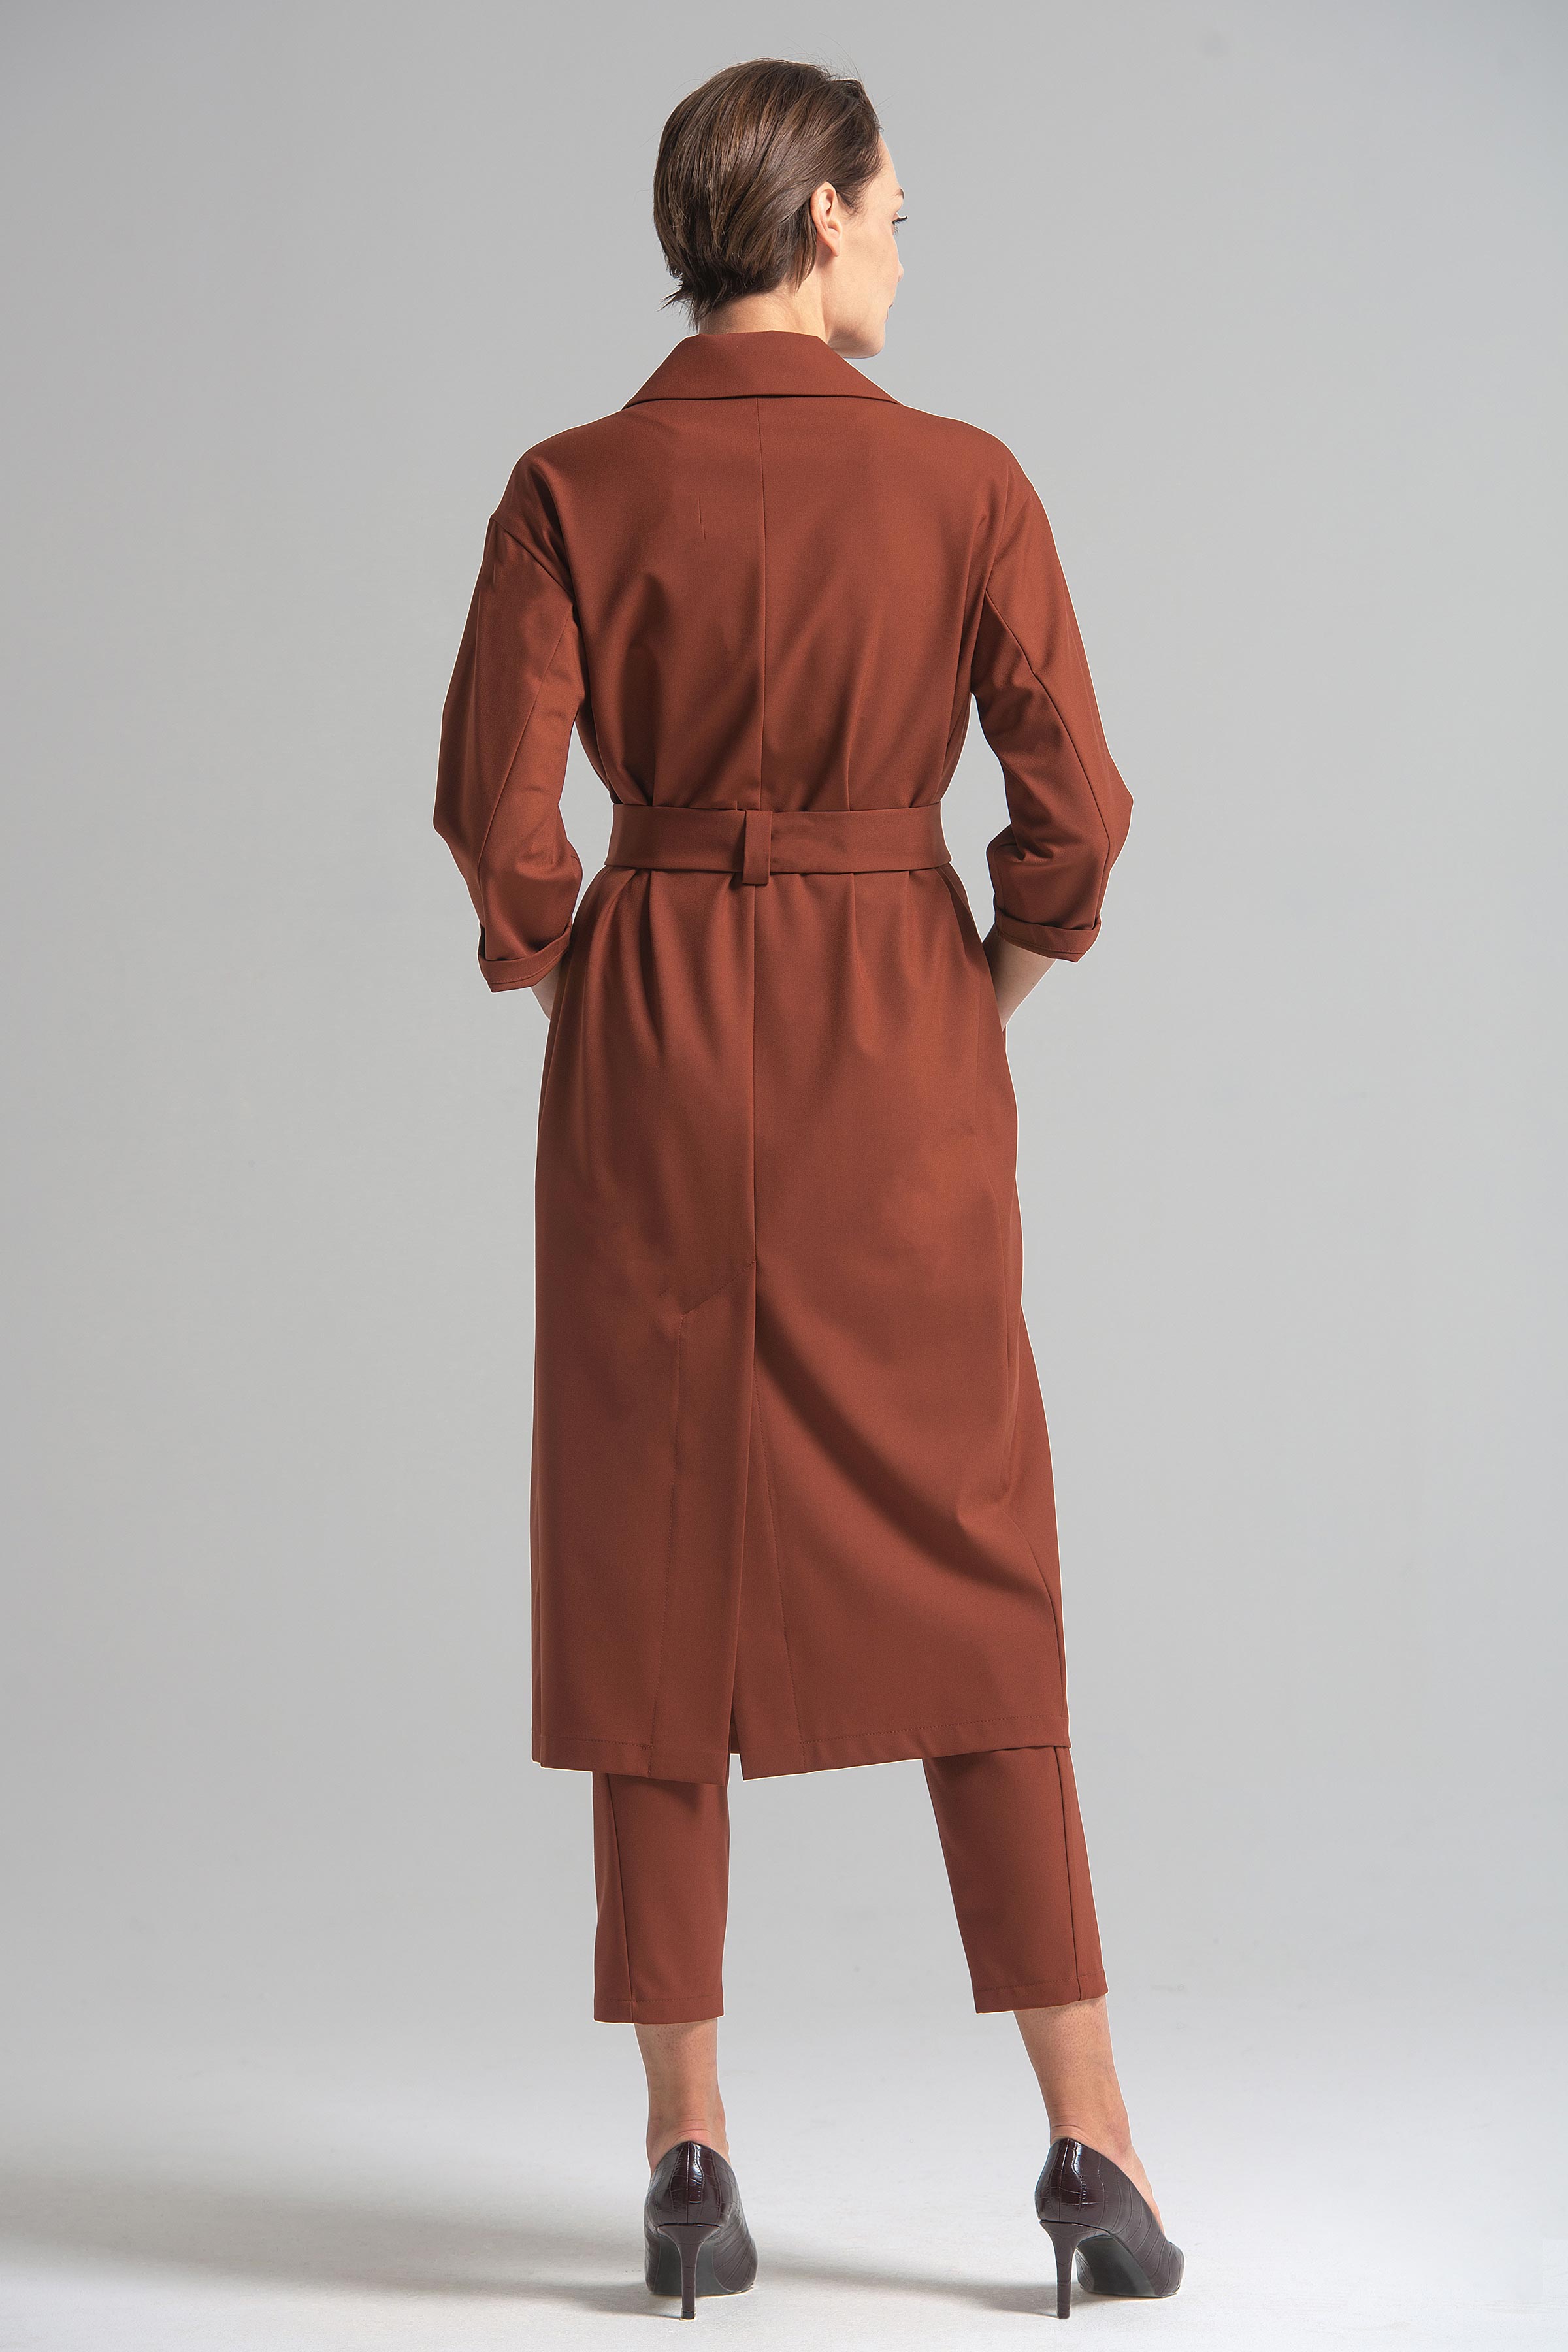 Платье двубортное 94 Красная глина (argile rouger) от Lesel (Лесель)! Заказывайте по ✆ 8 (800) 777 02 37